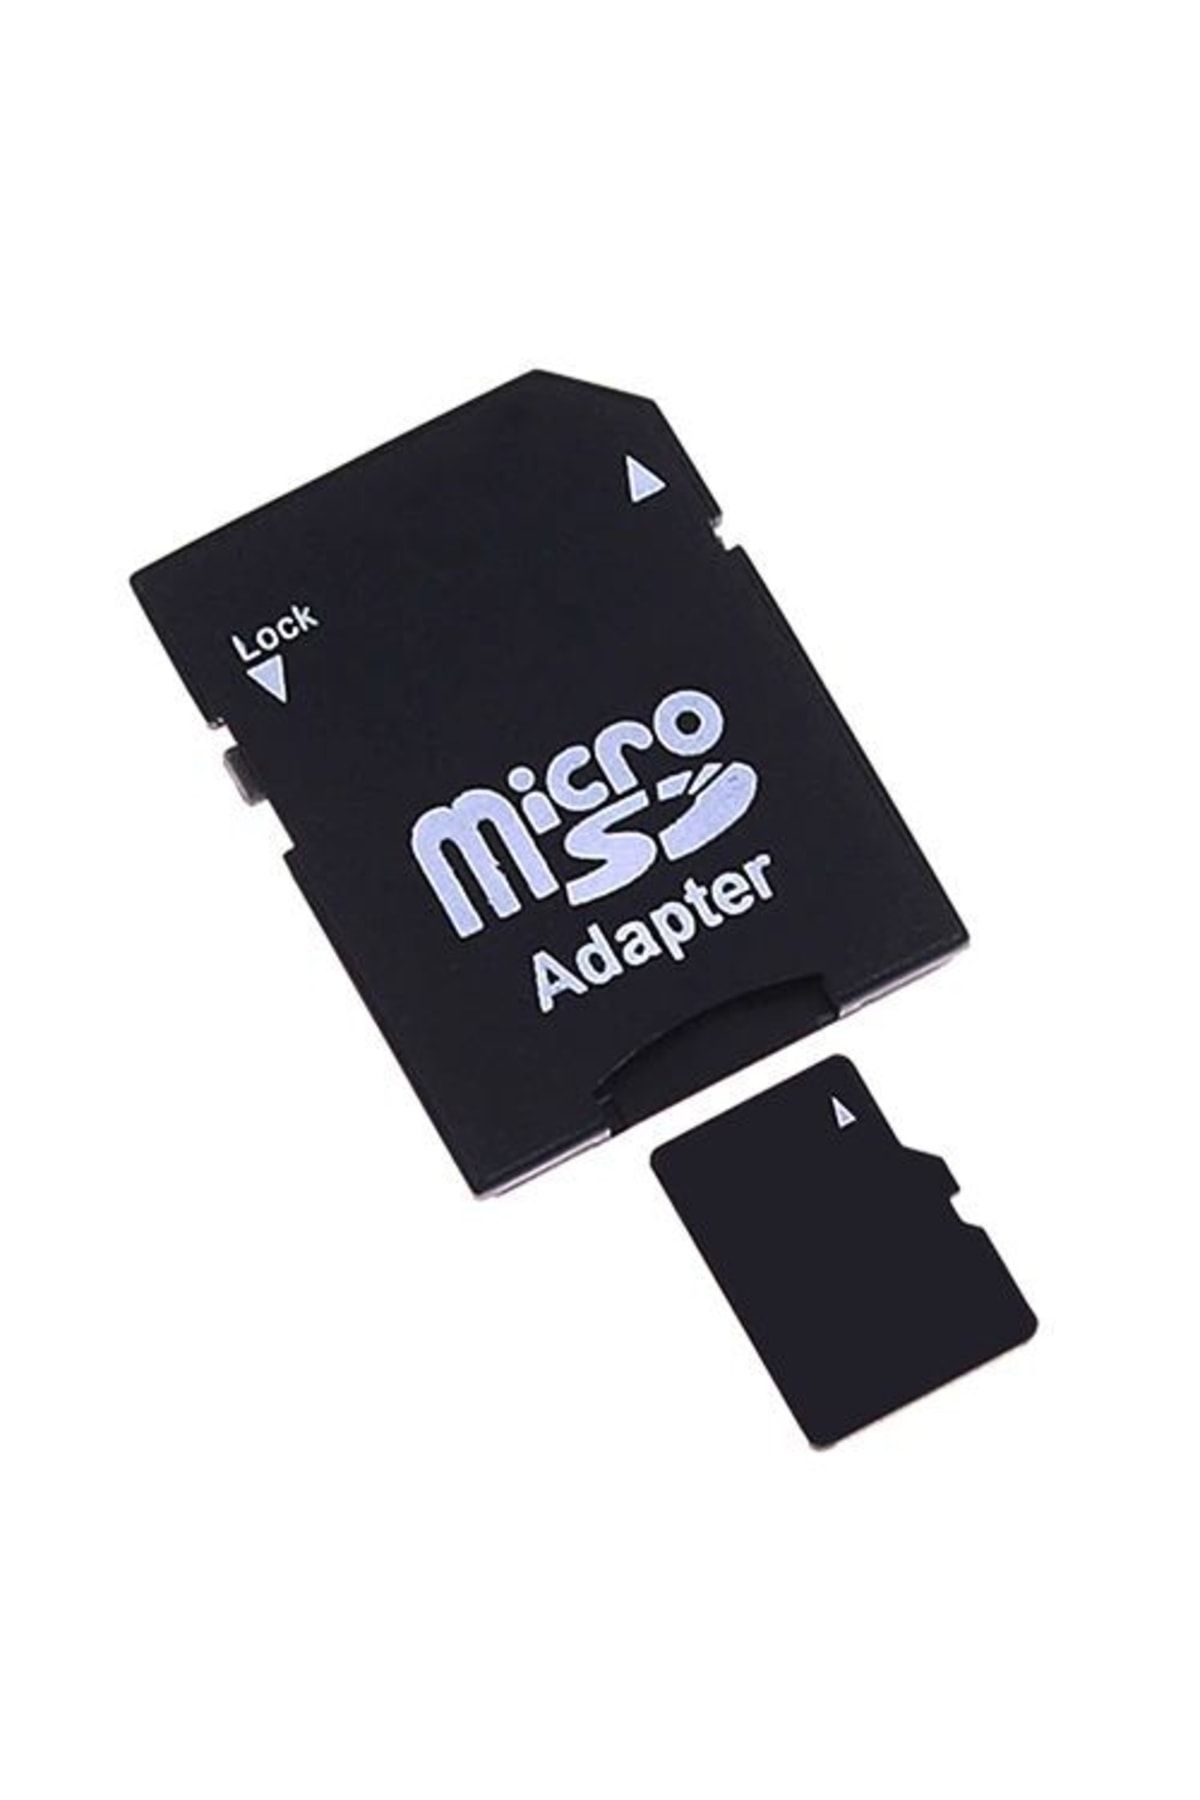 SD Card адаптер MICROSD